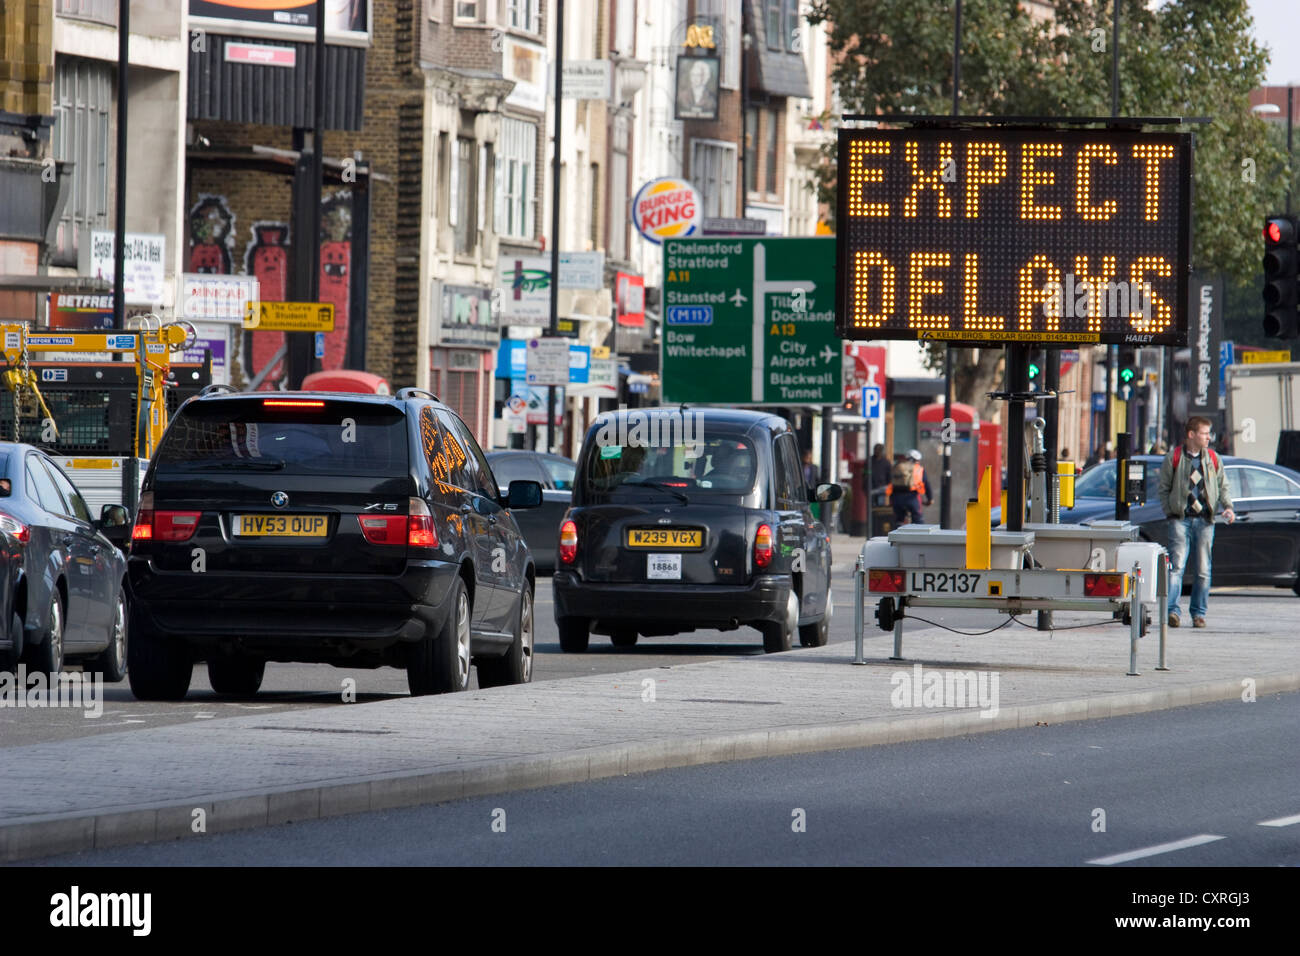 Straßenarbeiten, erwarten Verzögerungen Zeichen in überlasteten Zentral-London-UK Stockfoto